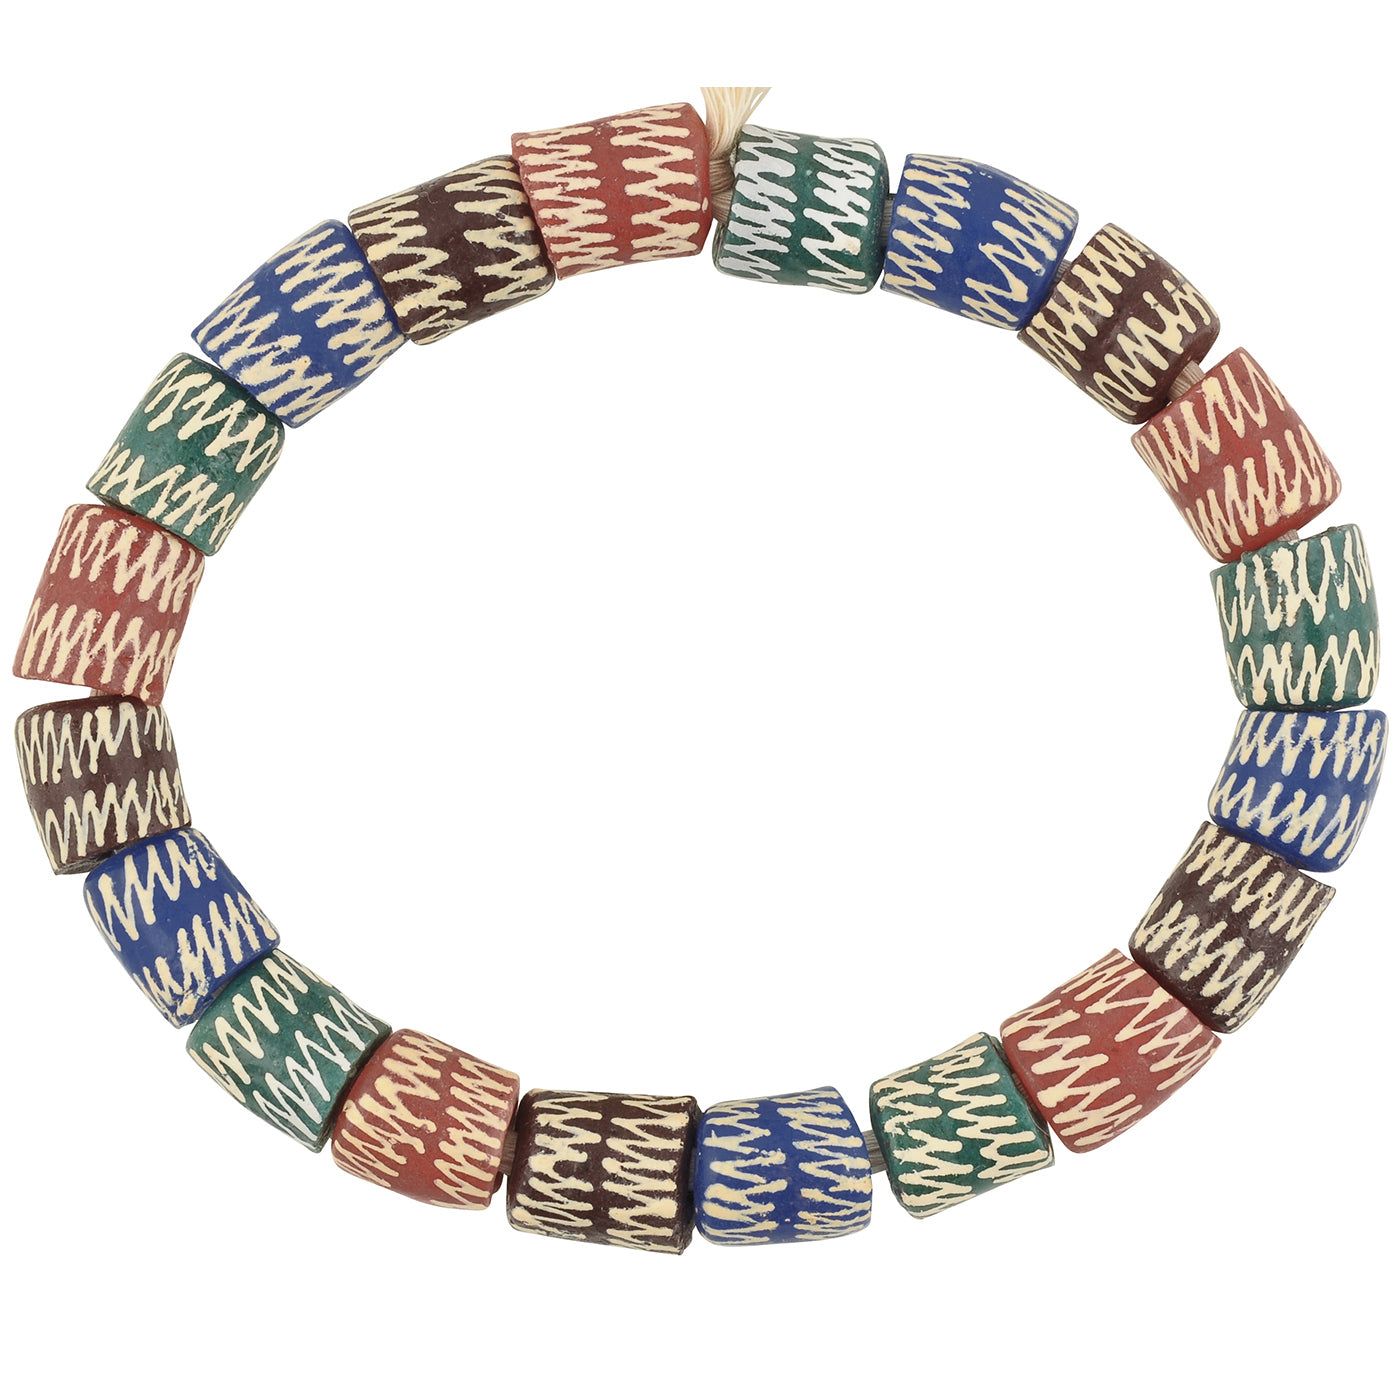 Afrikanische handgemachte Perlen recyceltes Glaspulver Armband Ghana - Tribalgh